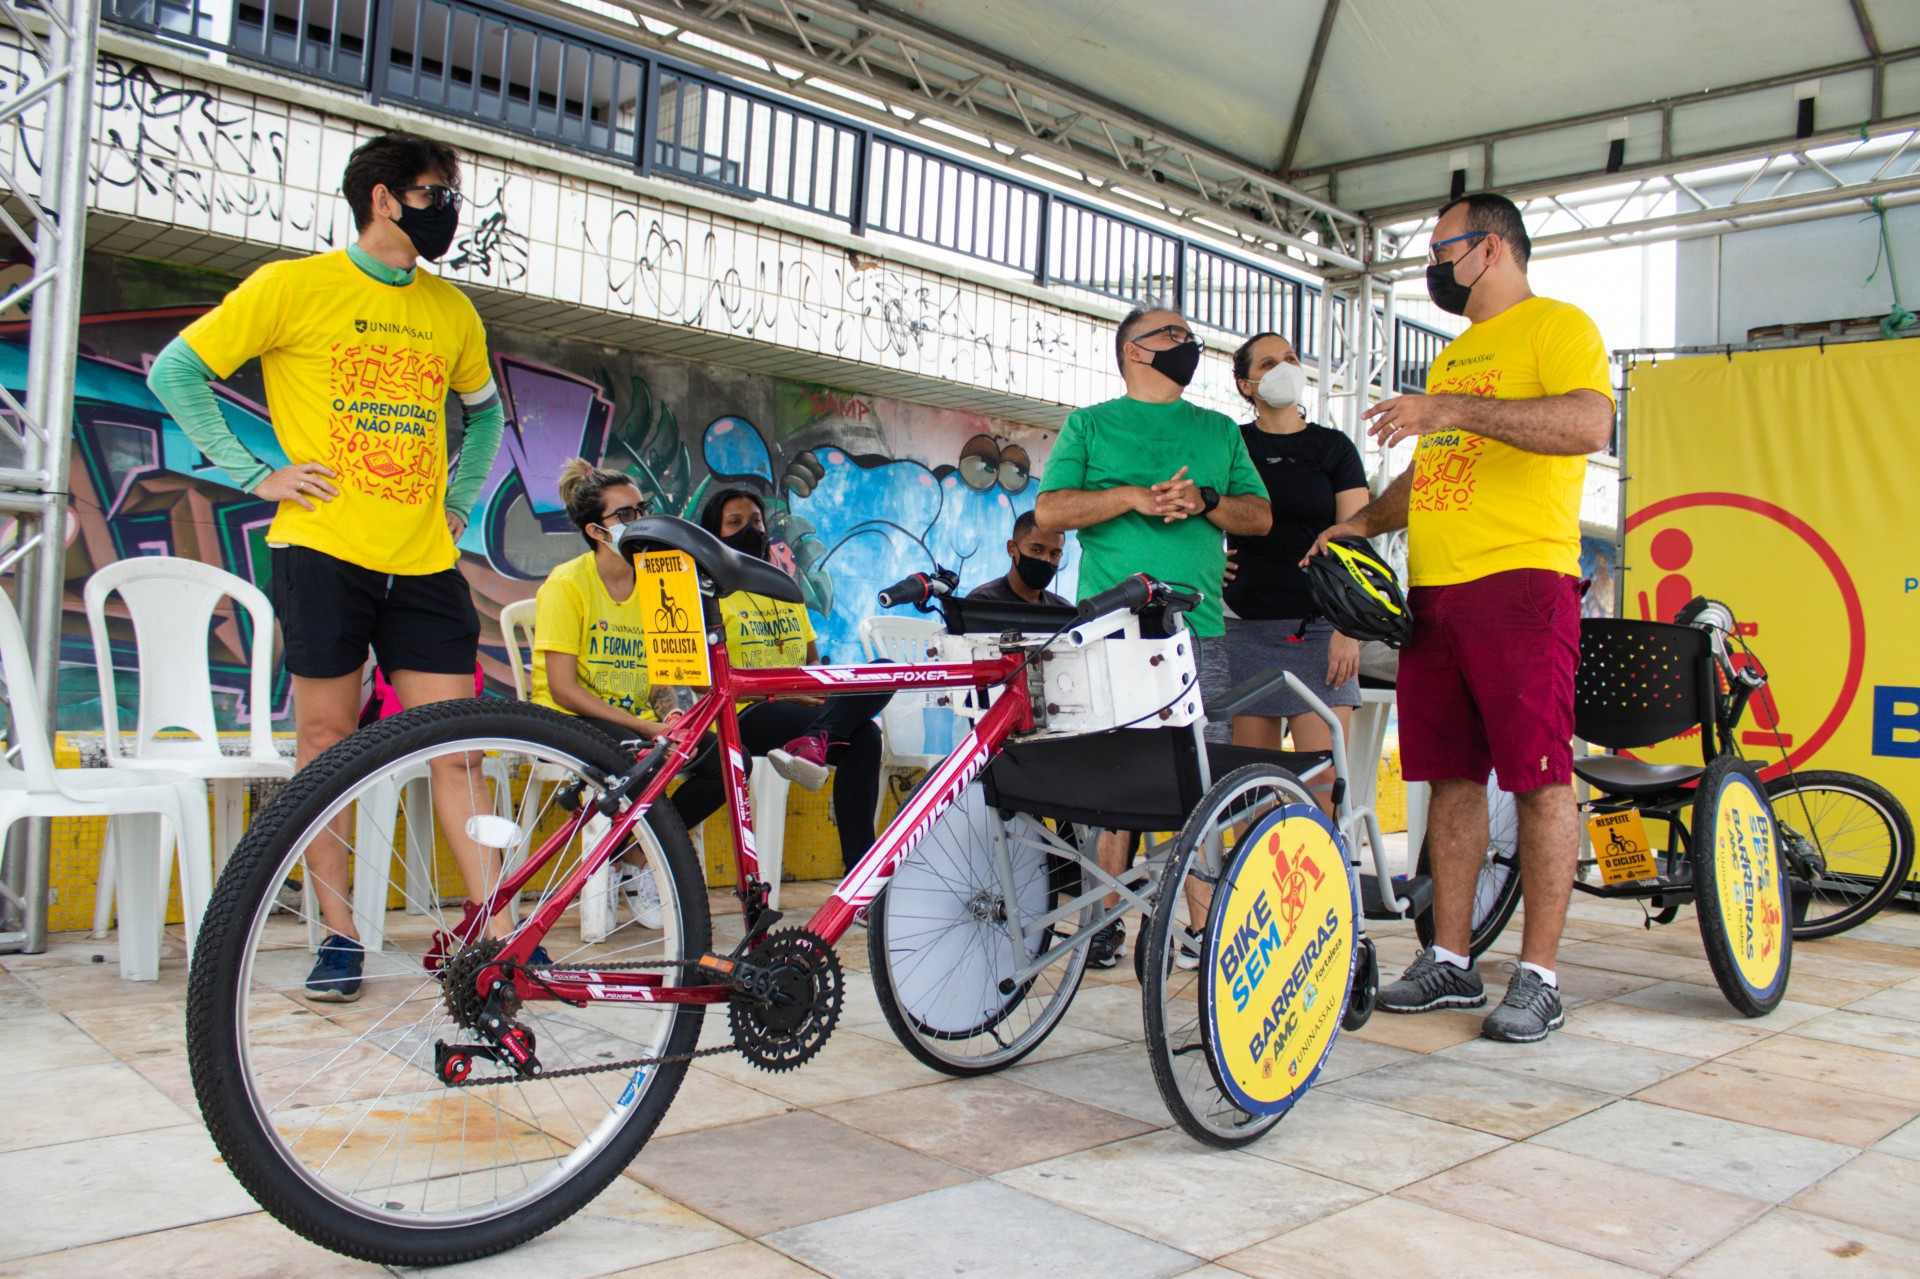 O coordenador Leonardo Freire explica para Francisco como a bicicleta The Duet funciona. O equipamento é disponibilizado para pessoas com mobilidade reduzida.